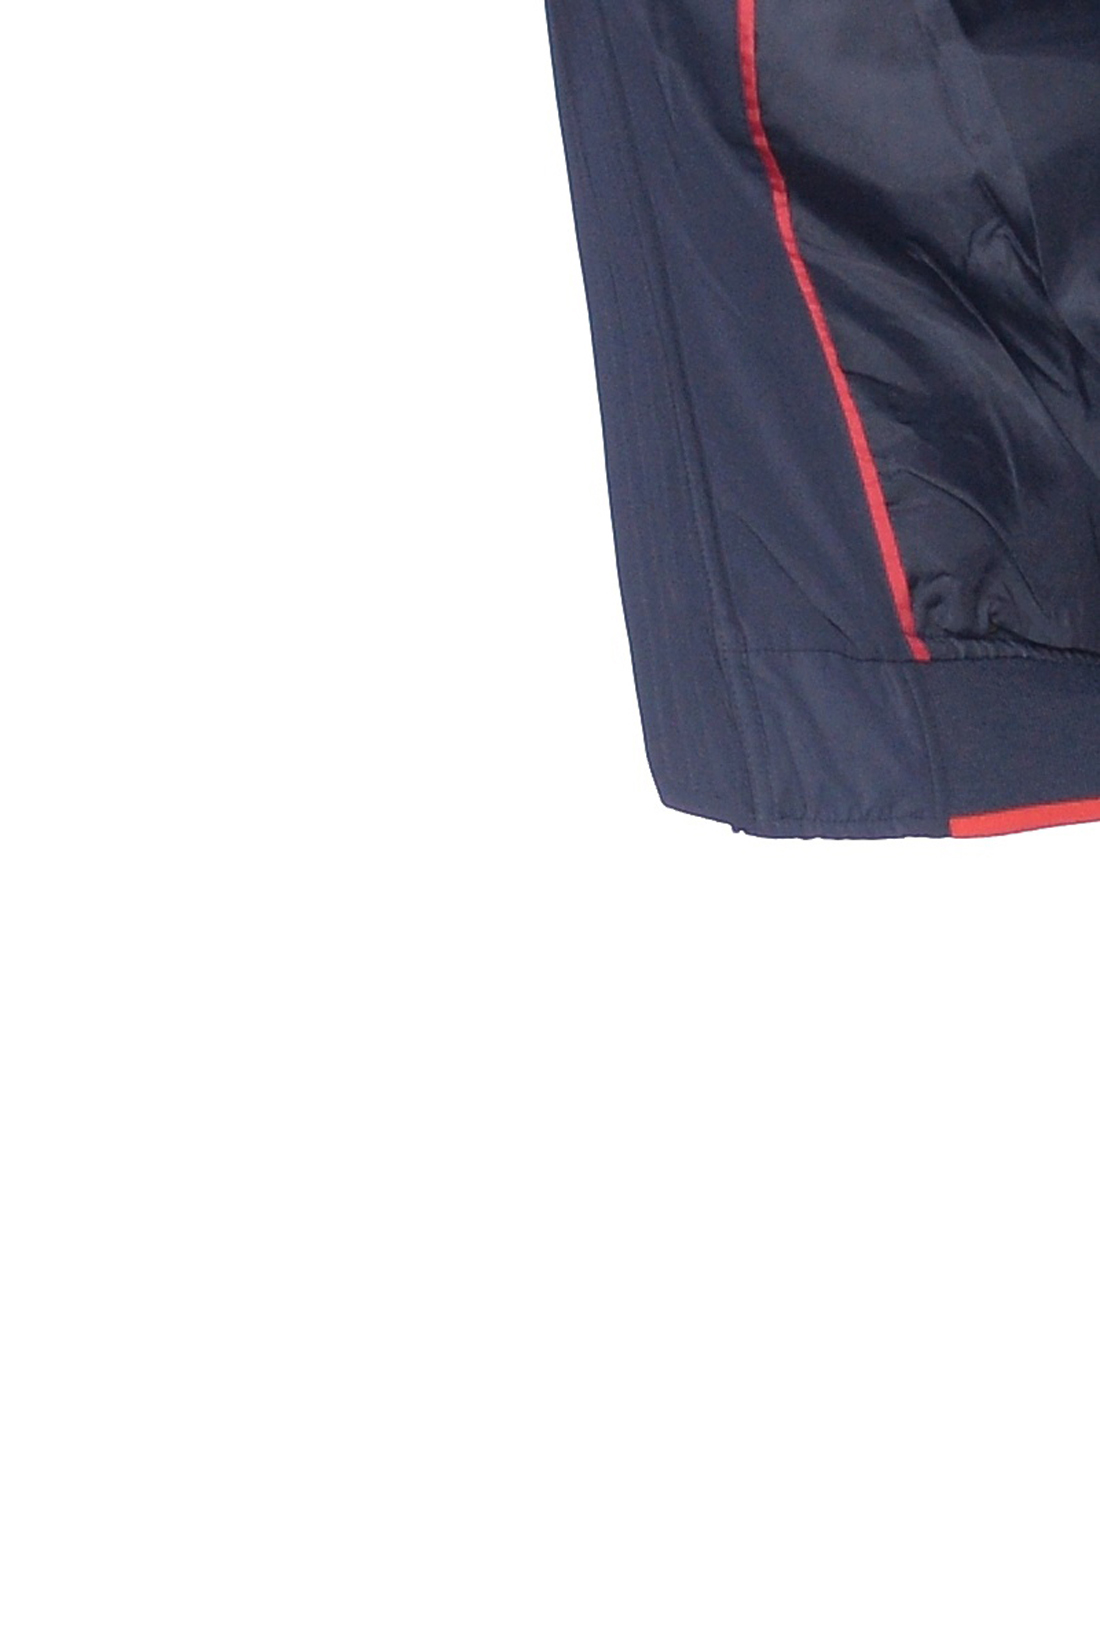 Куртка с красной окантовкой (арт. baon B539003), размер S, цвет синий Куртка с красной окантовкой (арт. baon B539003) - фото 2